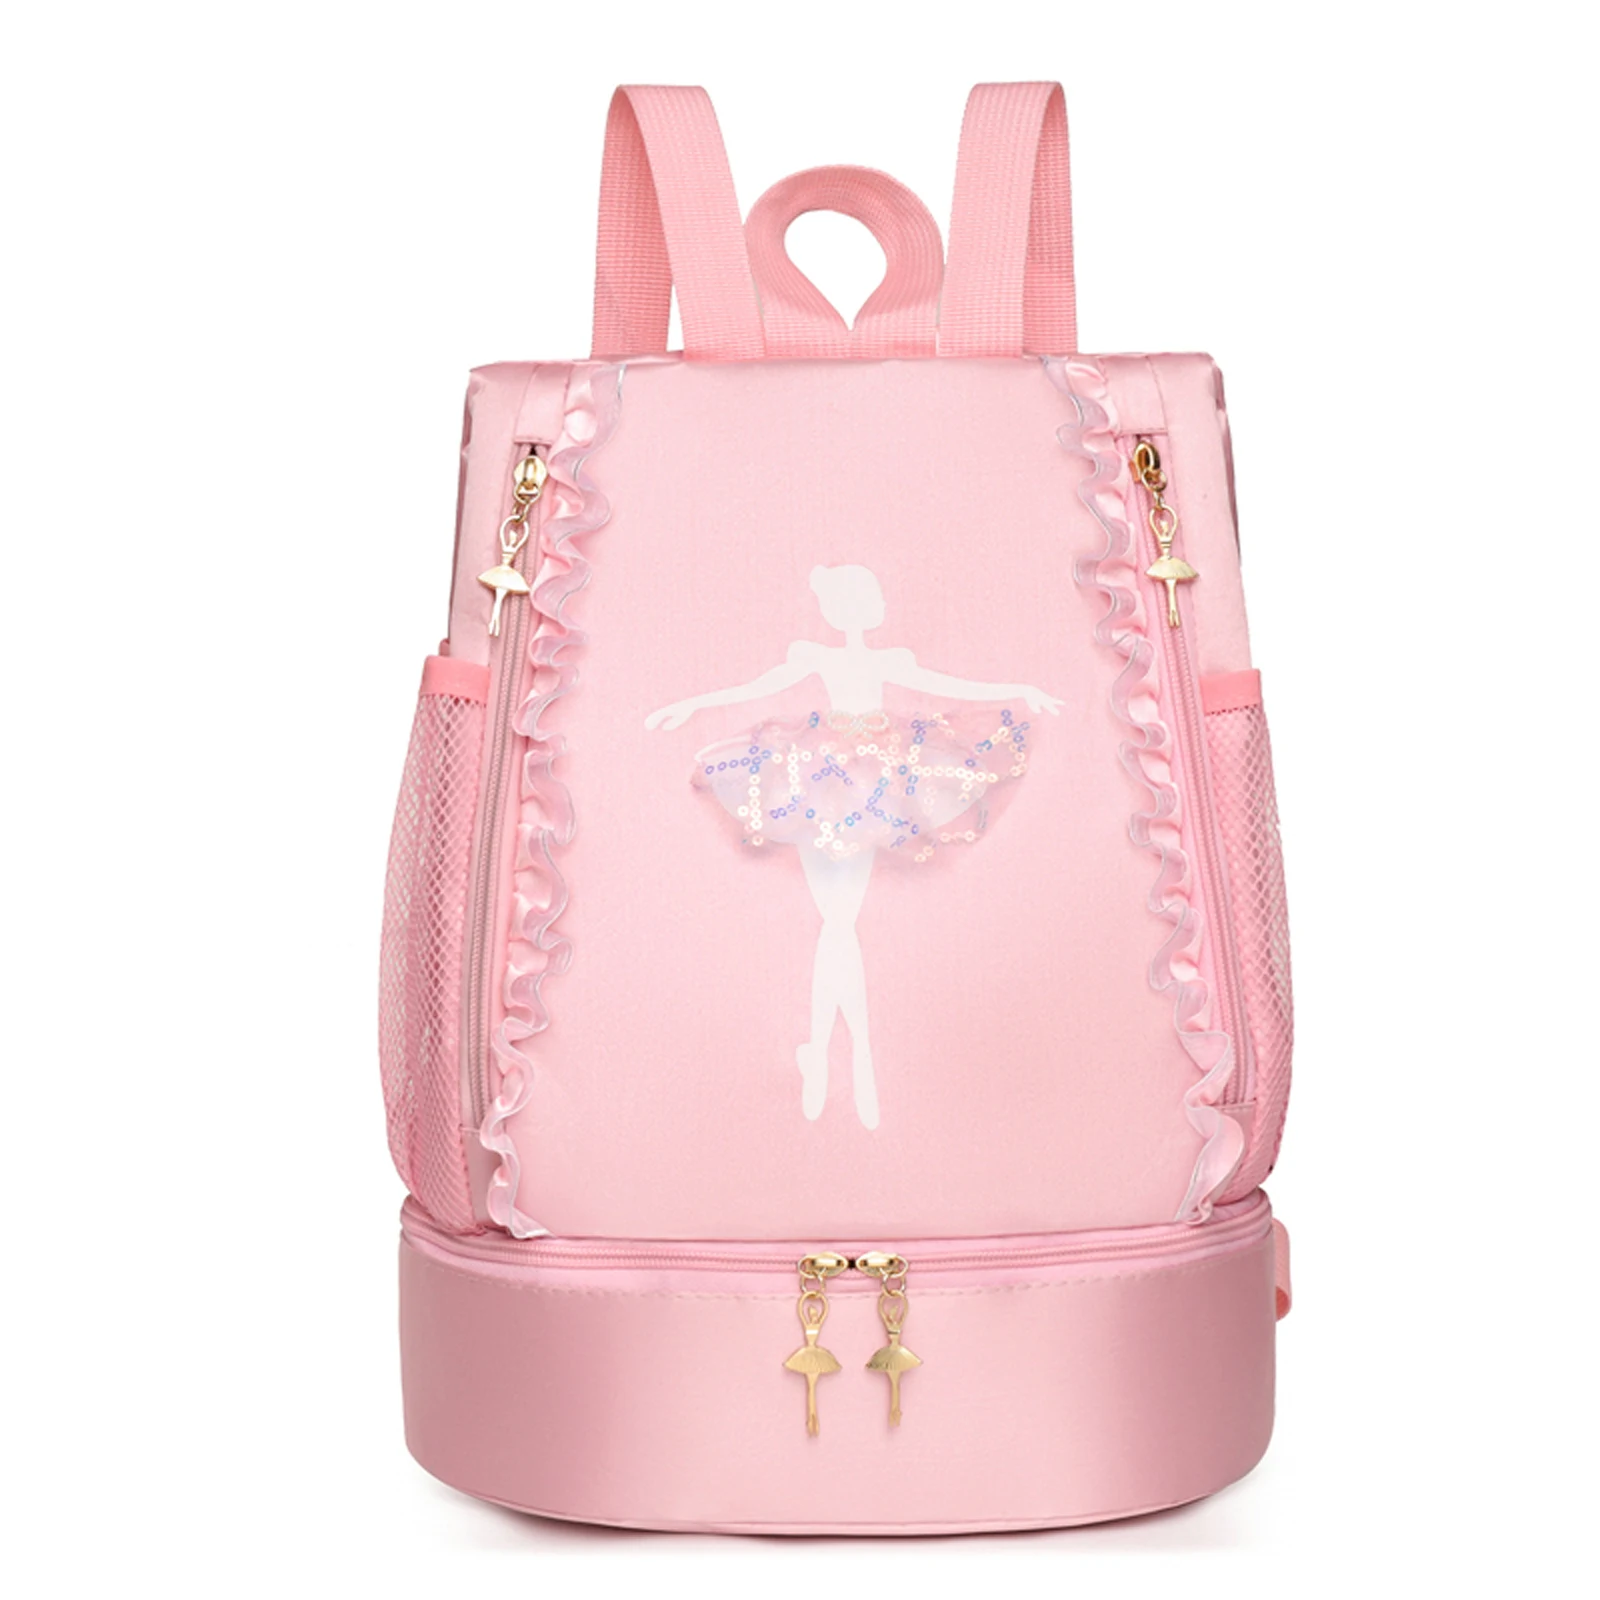 Lace Edge Letter Print Dance Bag for Kids Girls Latin Ballet Sports Dance Bag Double Shoulder Storage Backpack Ballerina Bag New